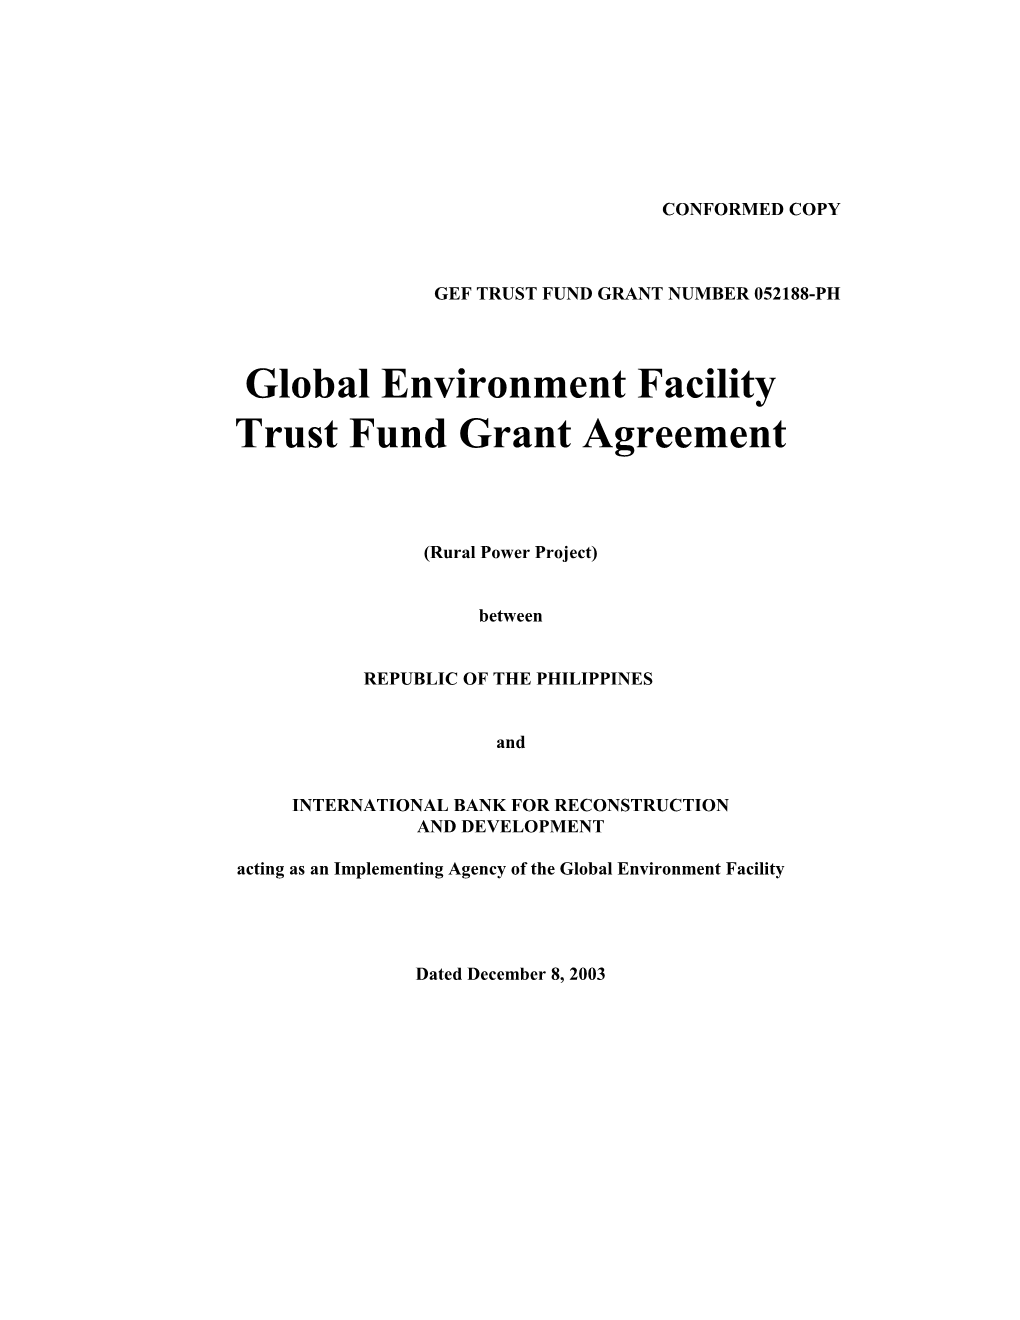 Gef Trust Fund Grant Number 052188-Ph